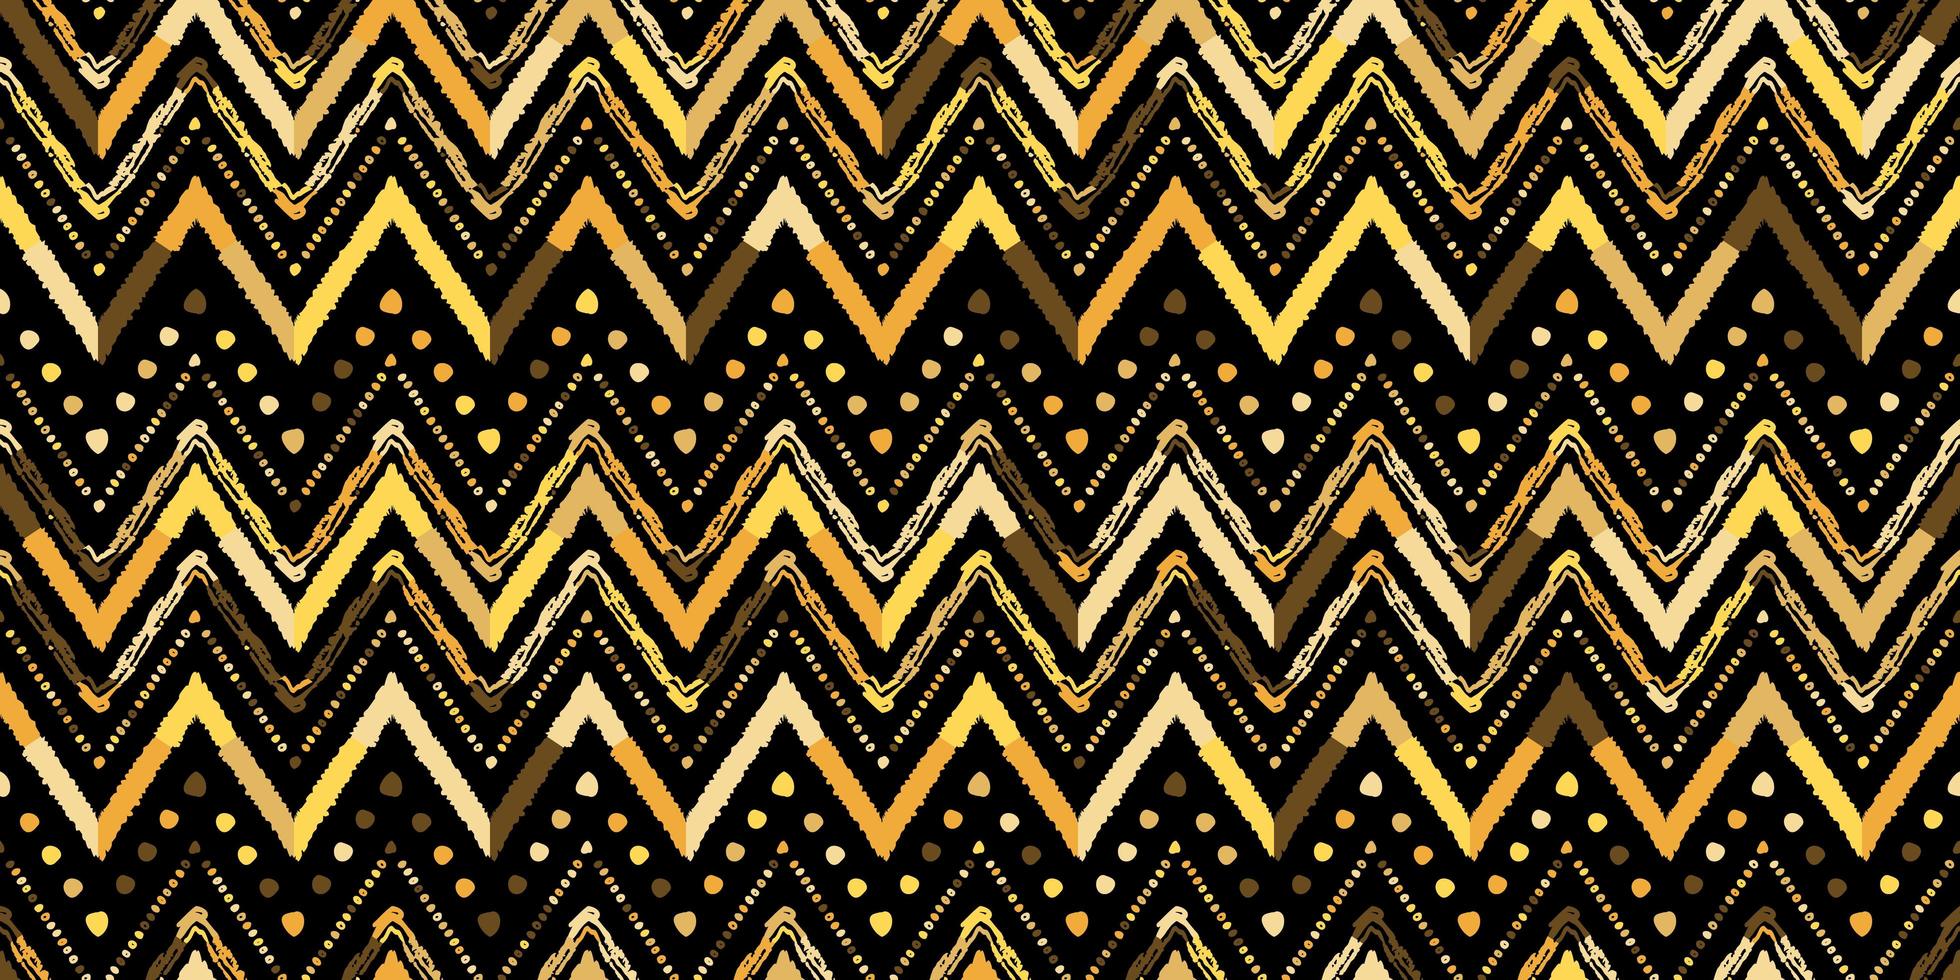 patrón de estilo africano en zigzag retro. diseño de chevron vector